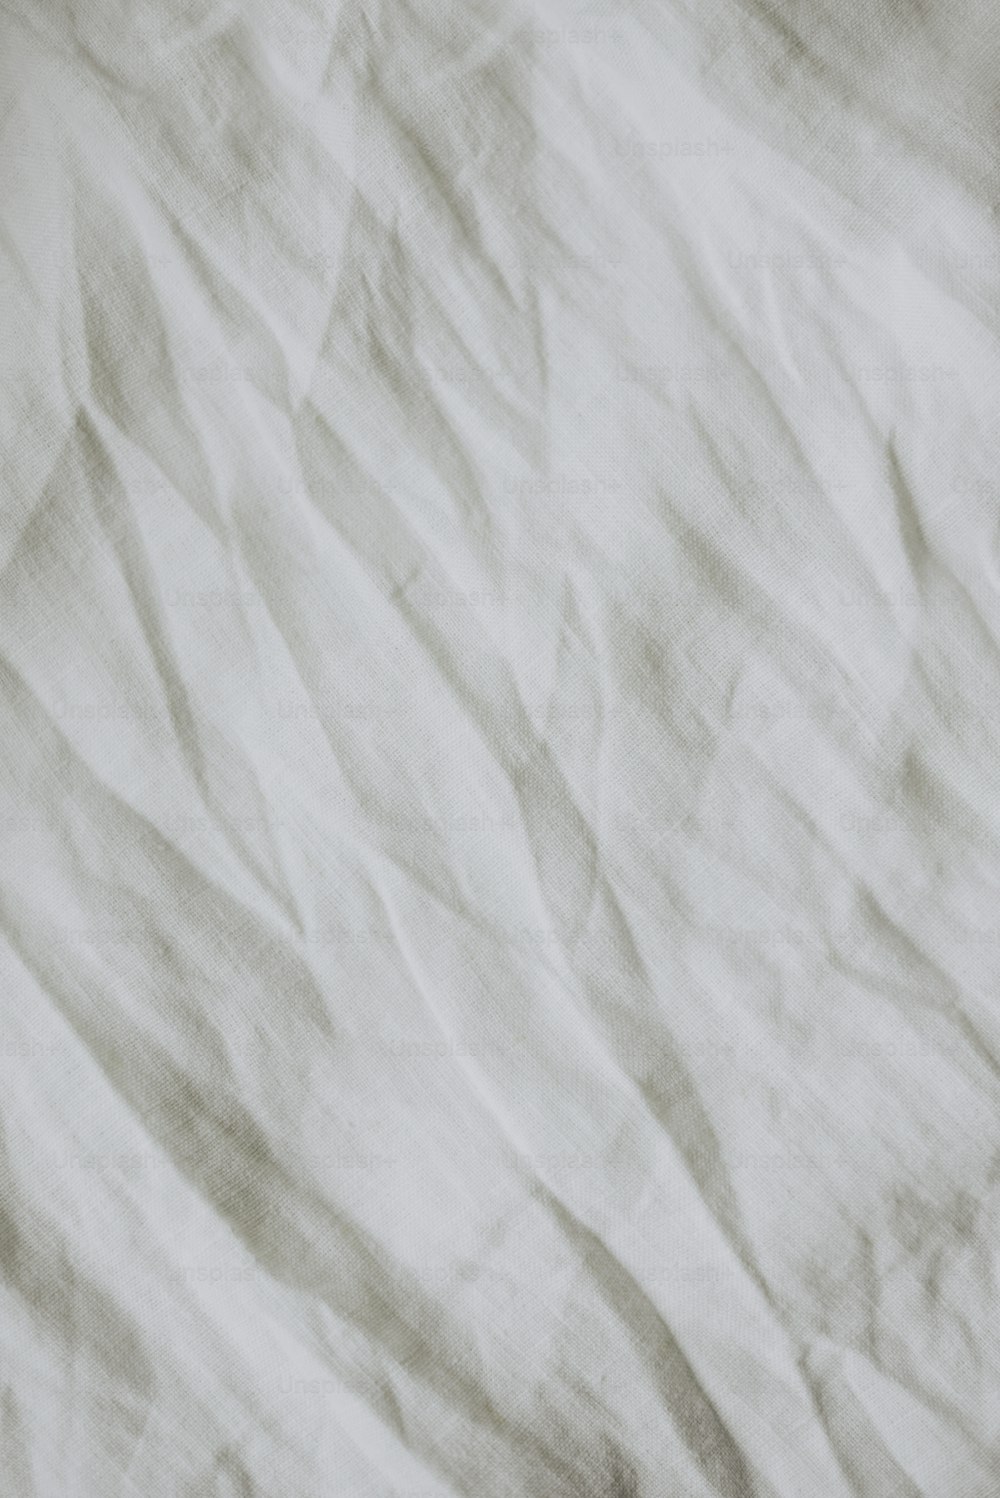 um close up de uma superfície branca